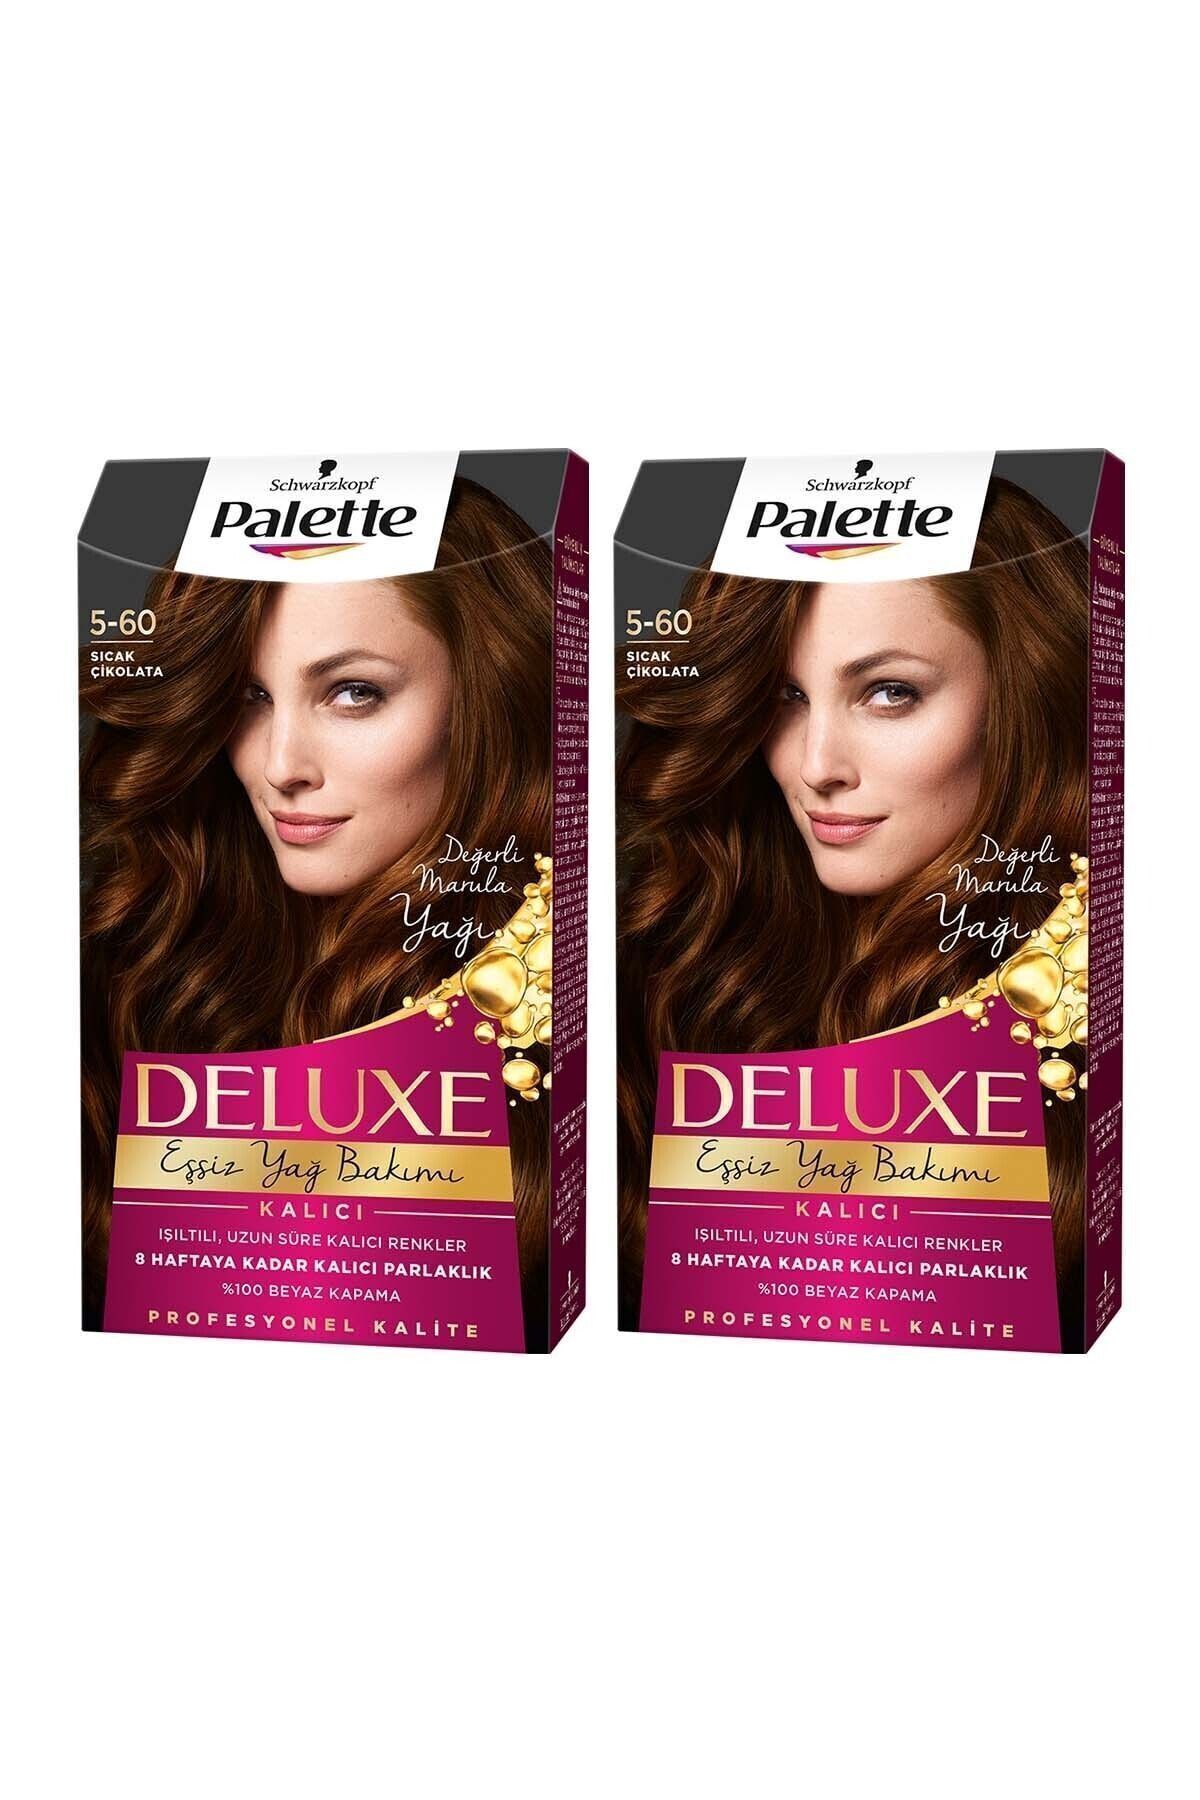 Palette Deluxe 5-60 Sicak Çikolata X 2 Adet